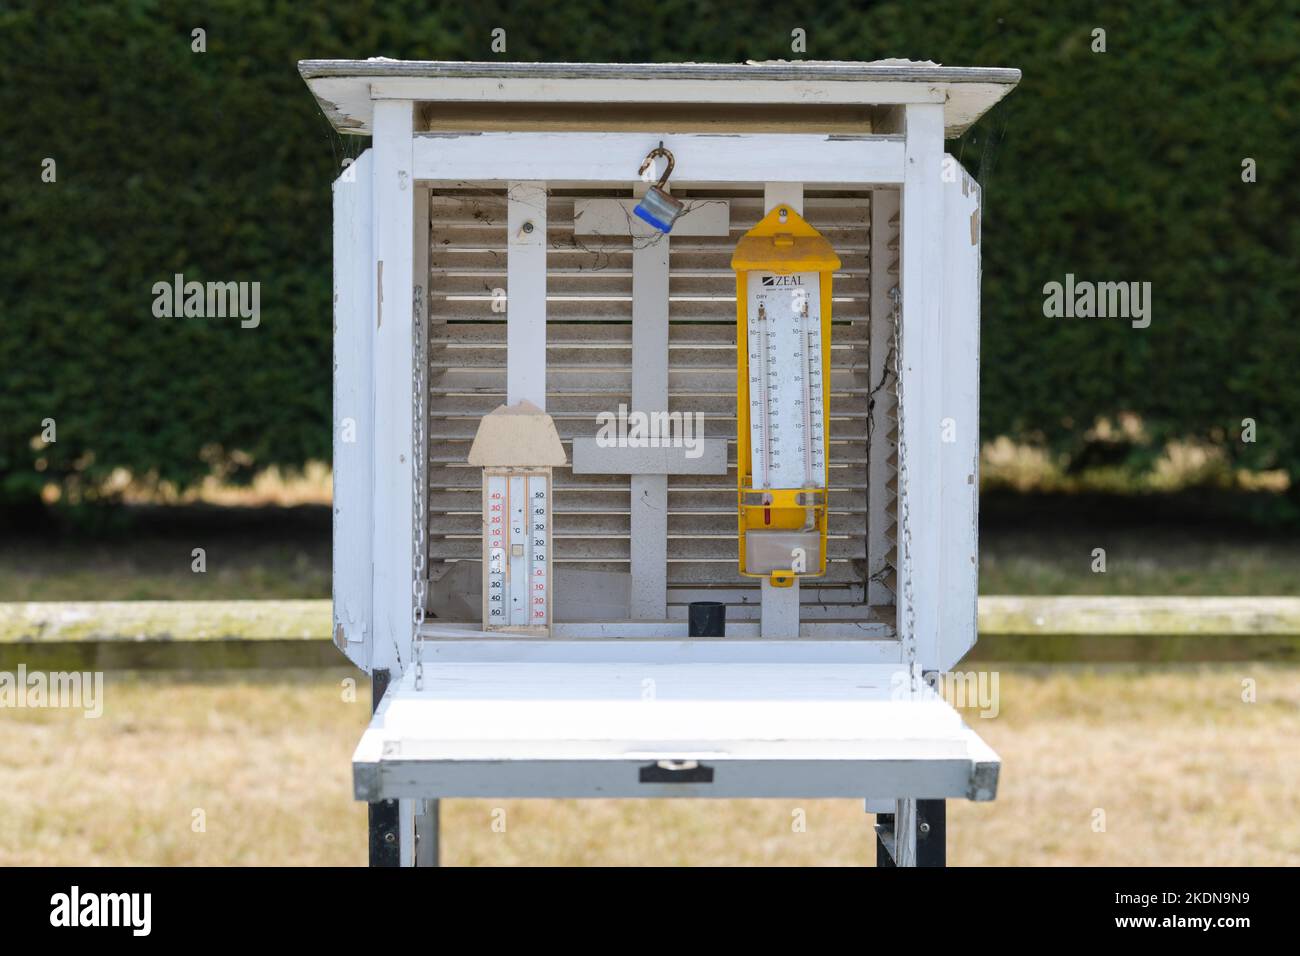 À l'intérieur de l'écran Stevenson montrant des théomètres à bulbe sec et humide dans le cadre de la station météorologique interactive de la Brogdale National fruit Collection, Kent, Royaume-Uni Banque D'Images